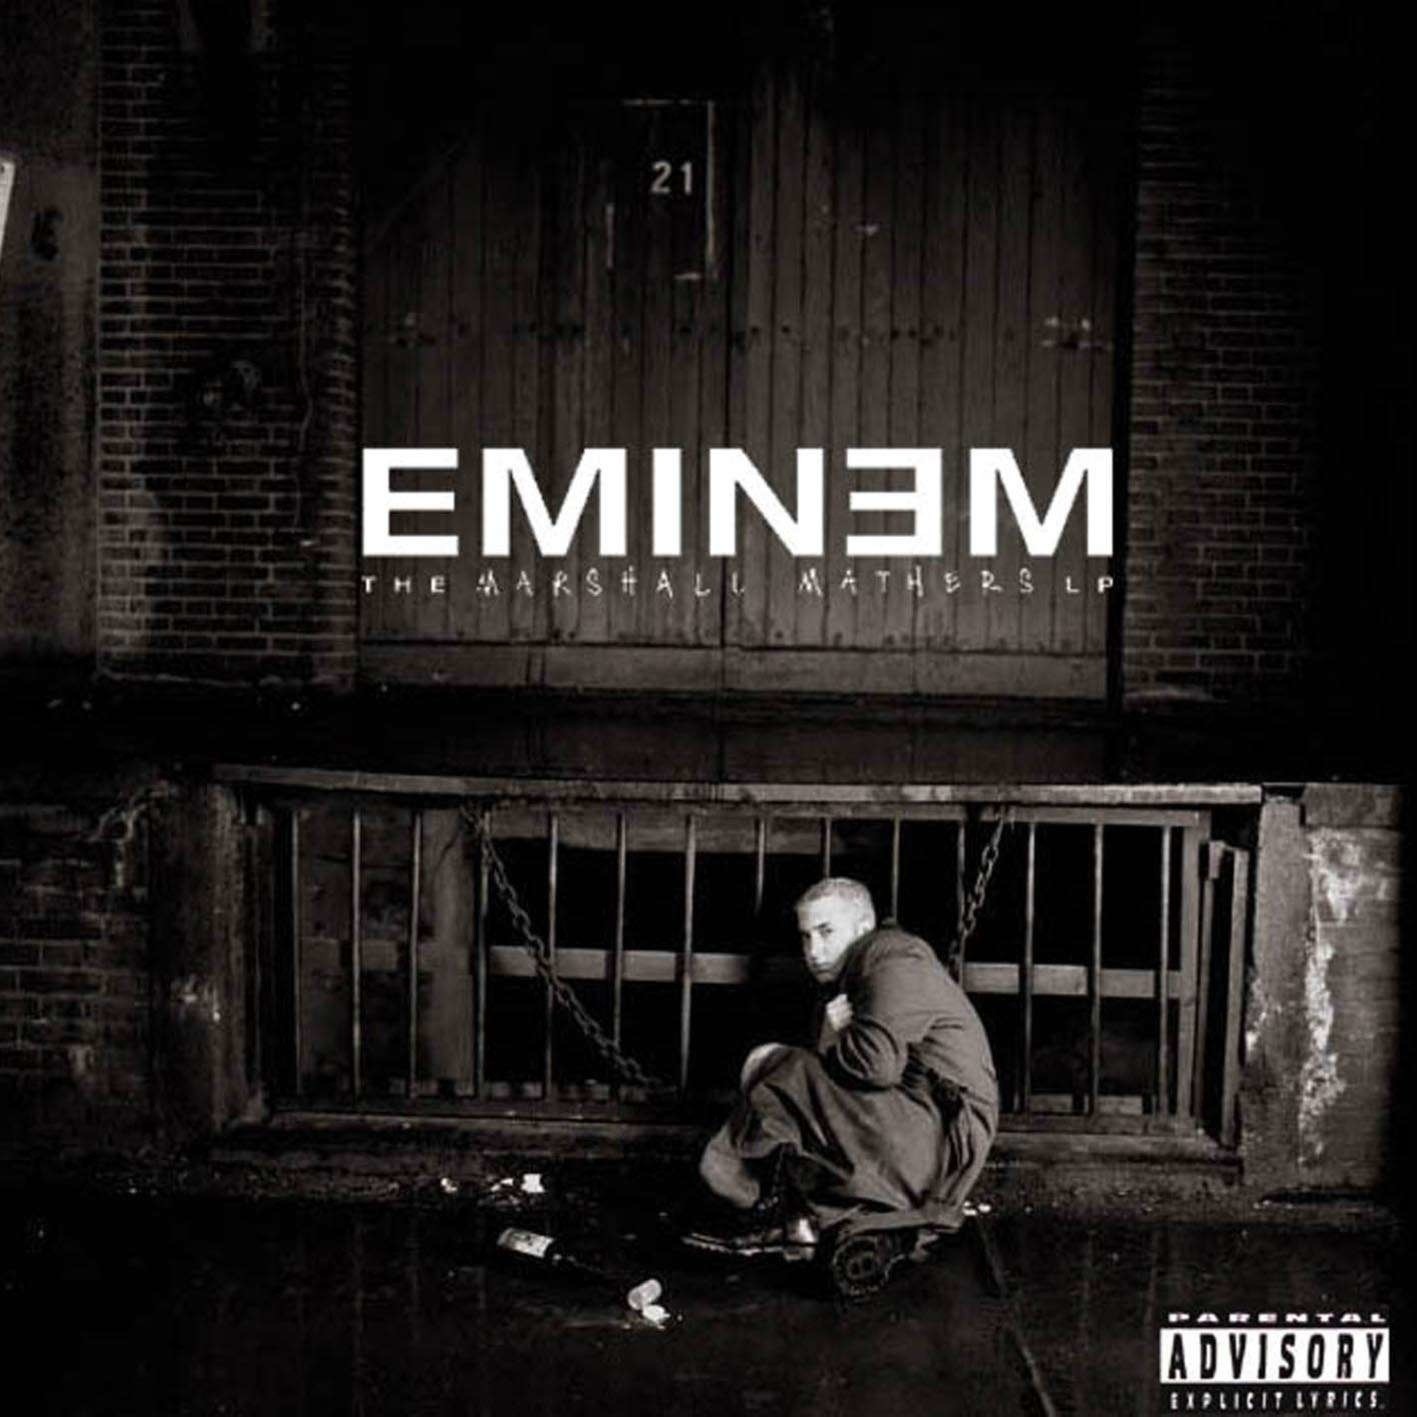 The Real Slim Shady (Tradução em Português) – Eminem